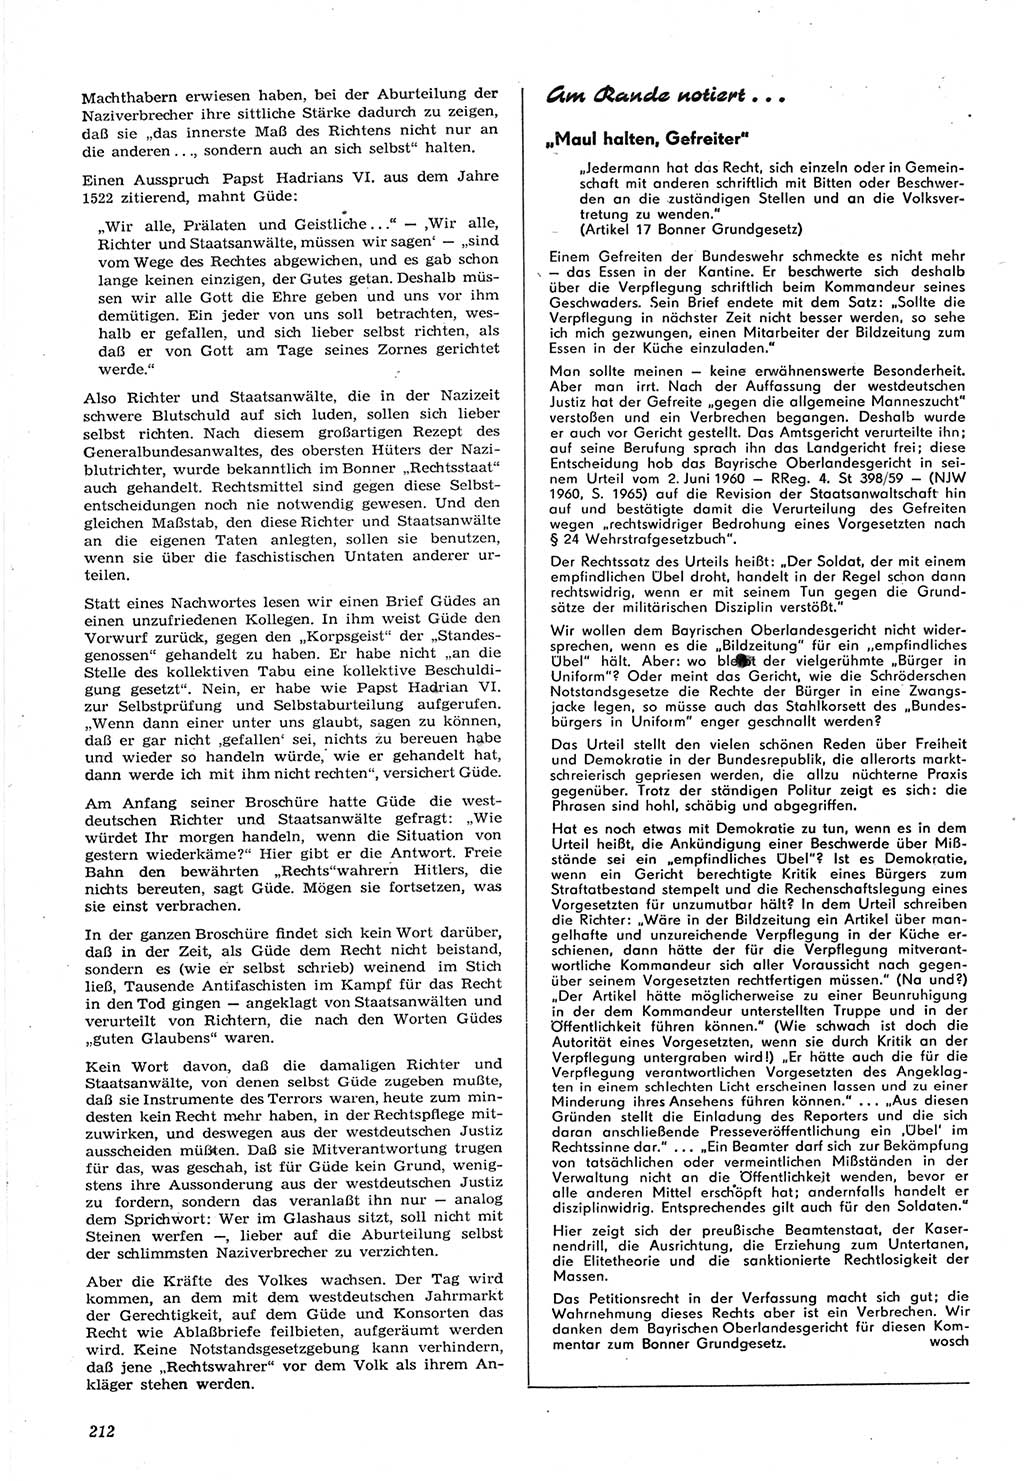 Neue Justiz (NJ), Zeitschrift für Recht und Rechtswissenschaft [Deutsche Demokratische Republik (DDR)], 15. Jahrgang 1961, Seite 212 (NJ DDR 1961, S. 212)